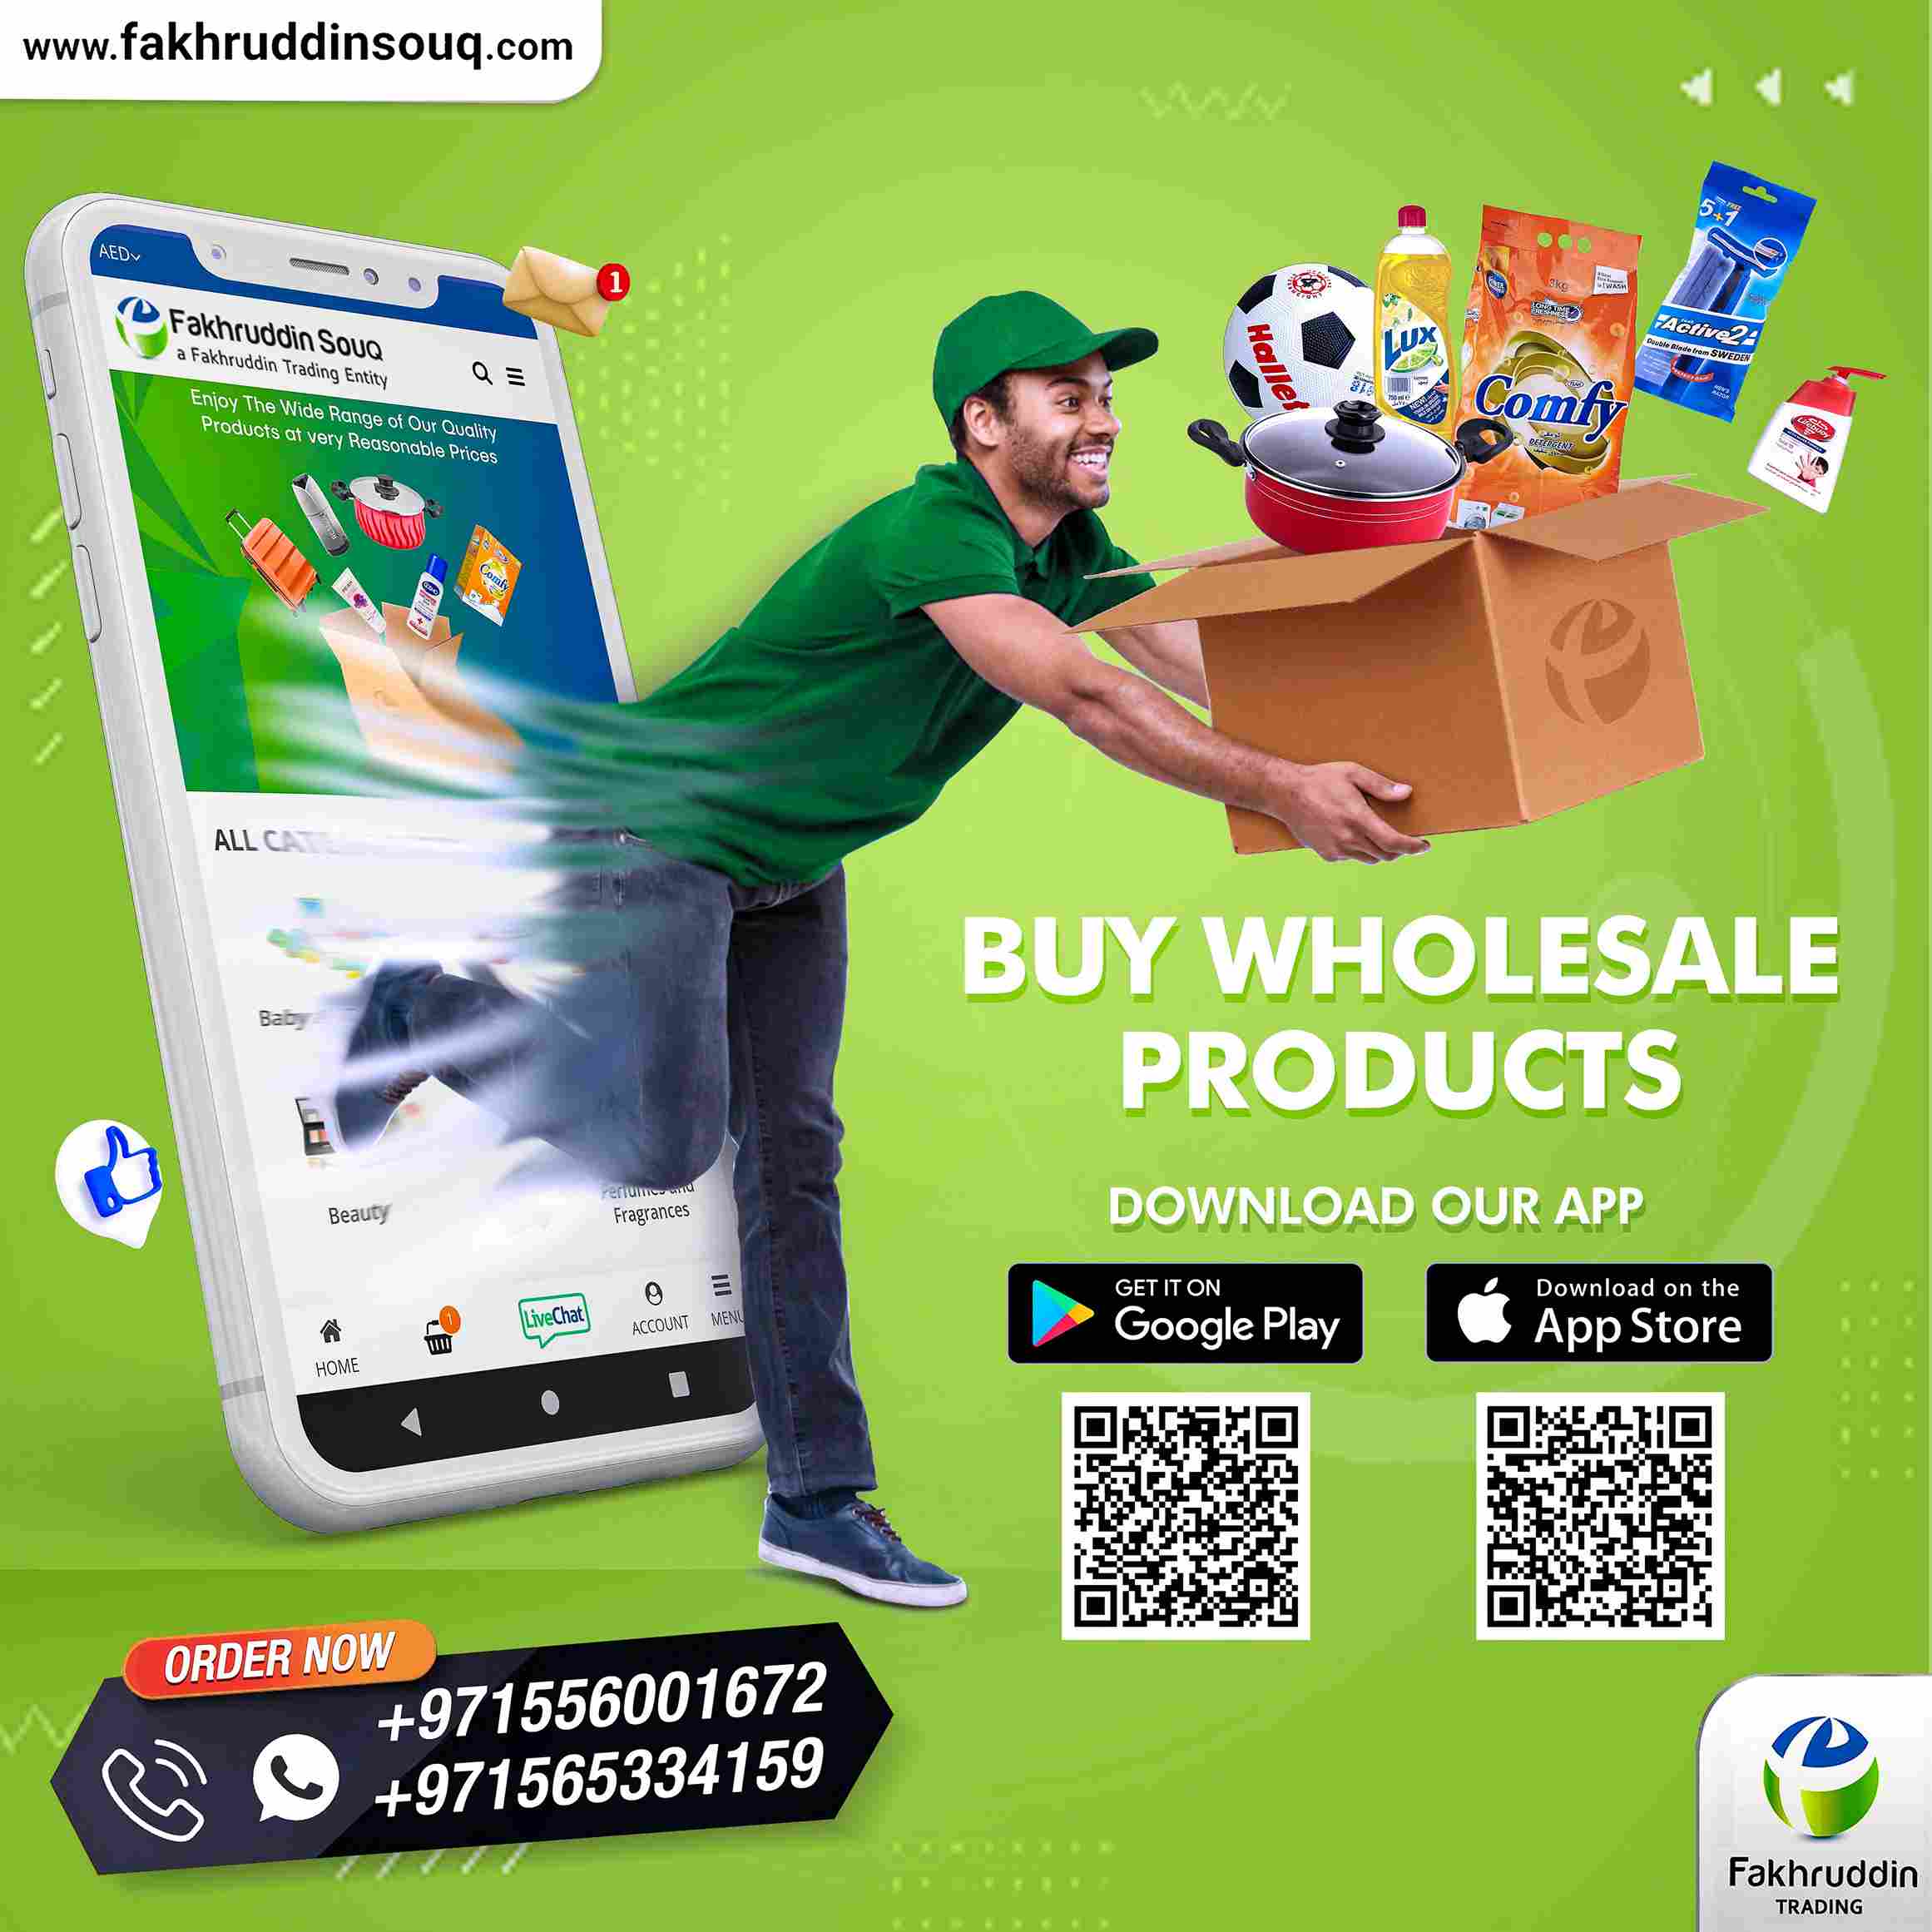 Fakhruddin-Trading-Wholesale-Dealer-Supplier-in-UAE.jpg